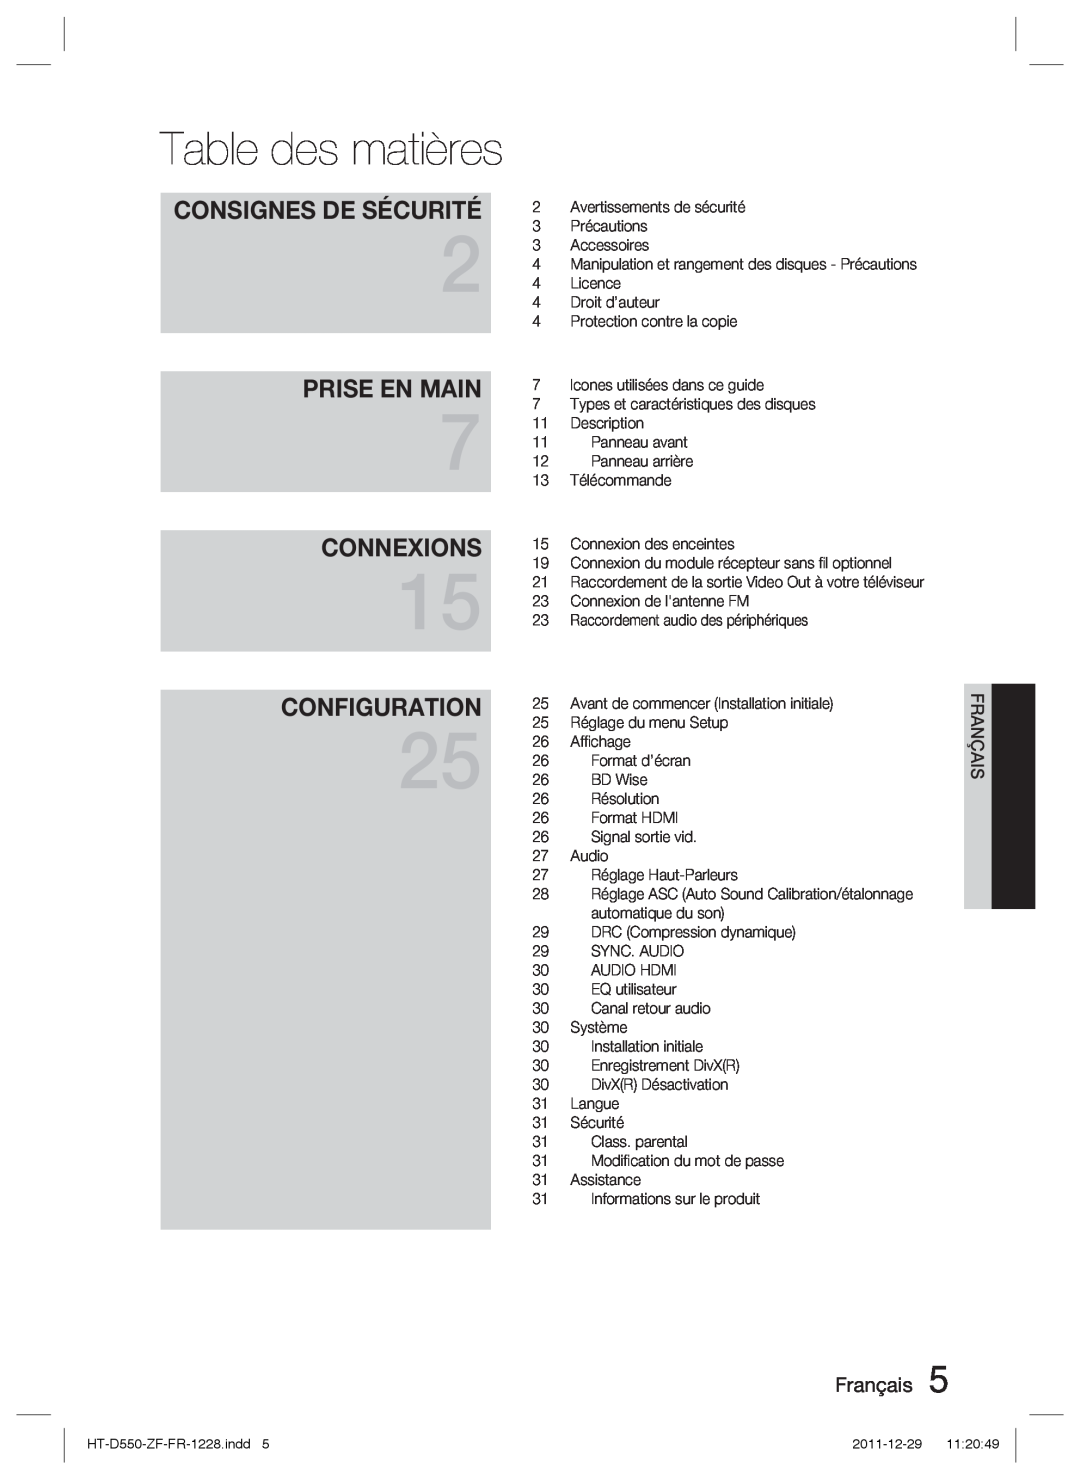 Samsung HT-D555/ZF manual Table des matières, Prise En Main, Connexions, Configuration, Consignes De Sécurité, Français 